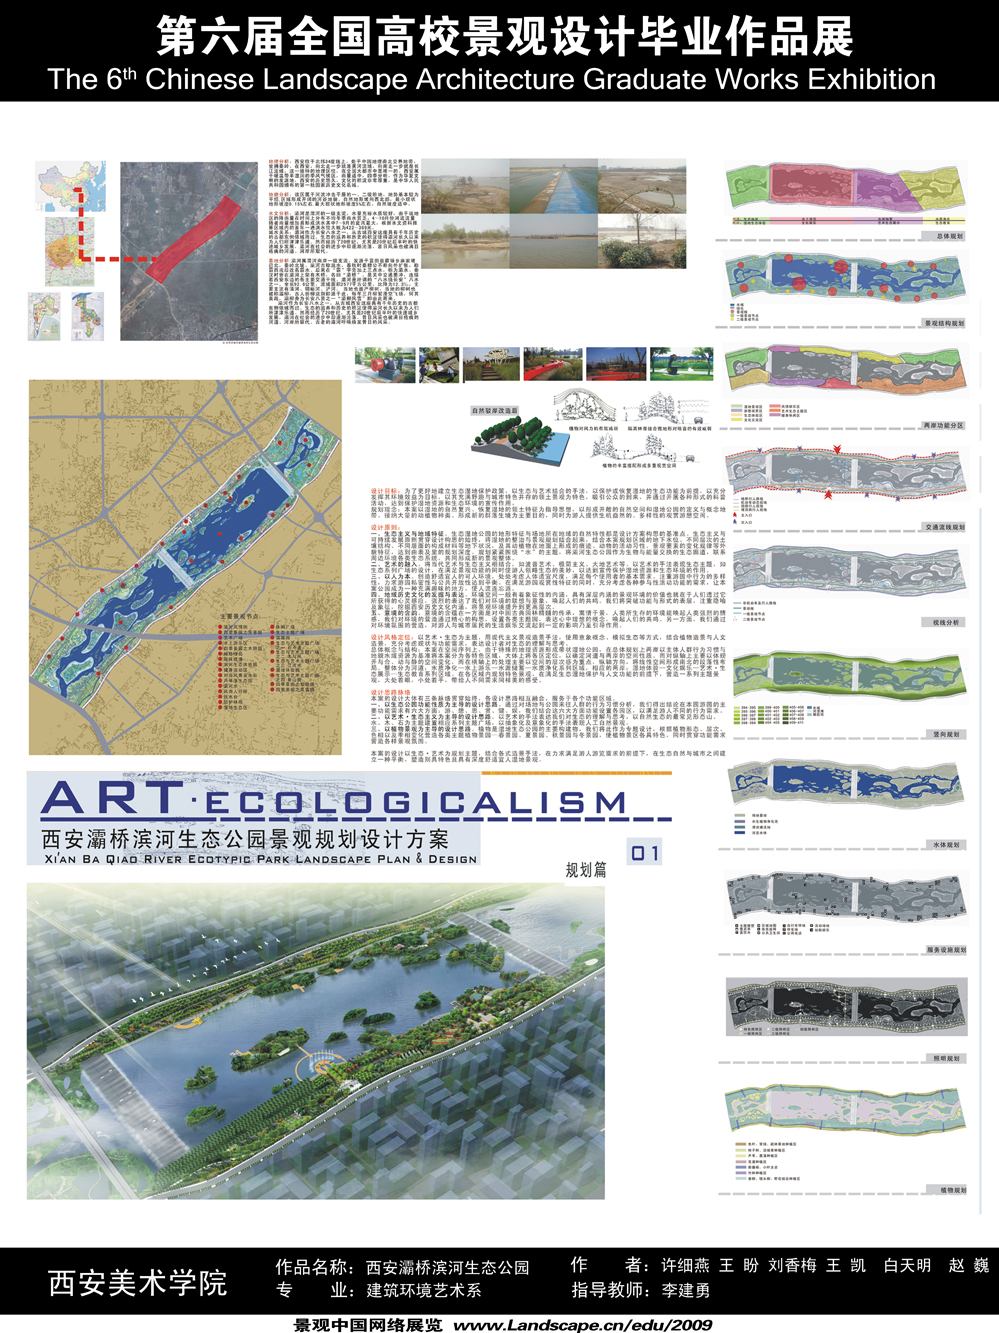 西安灞桥滨河生态公园景观规划设计-1